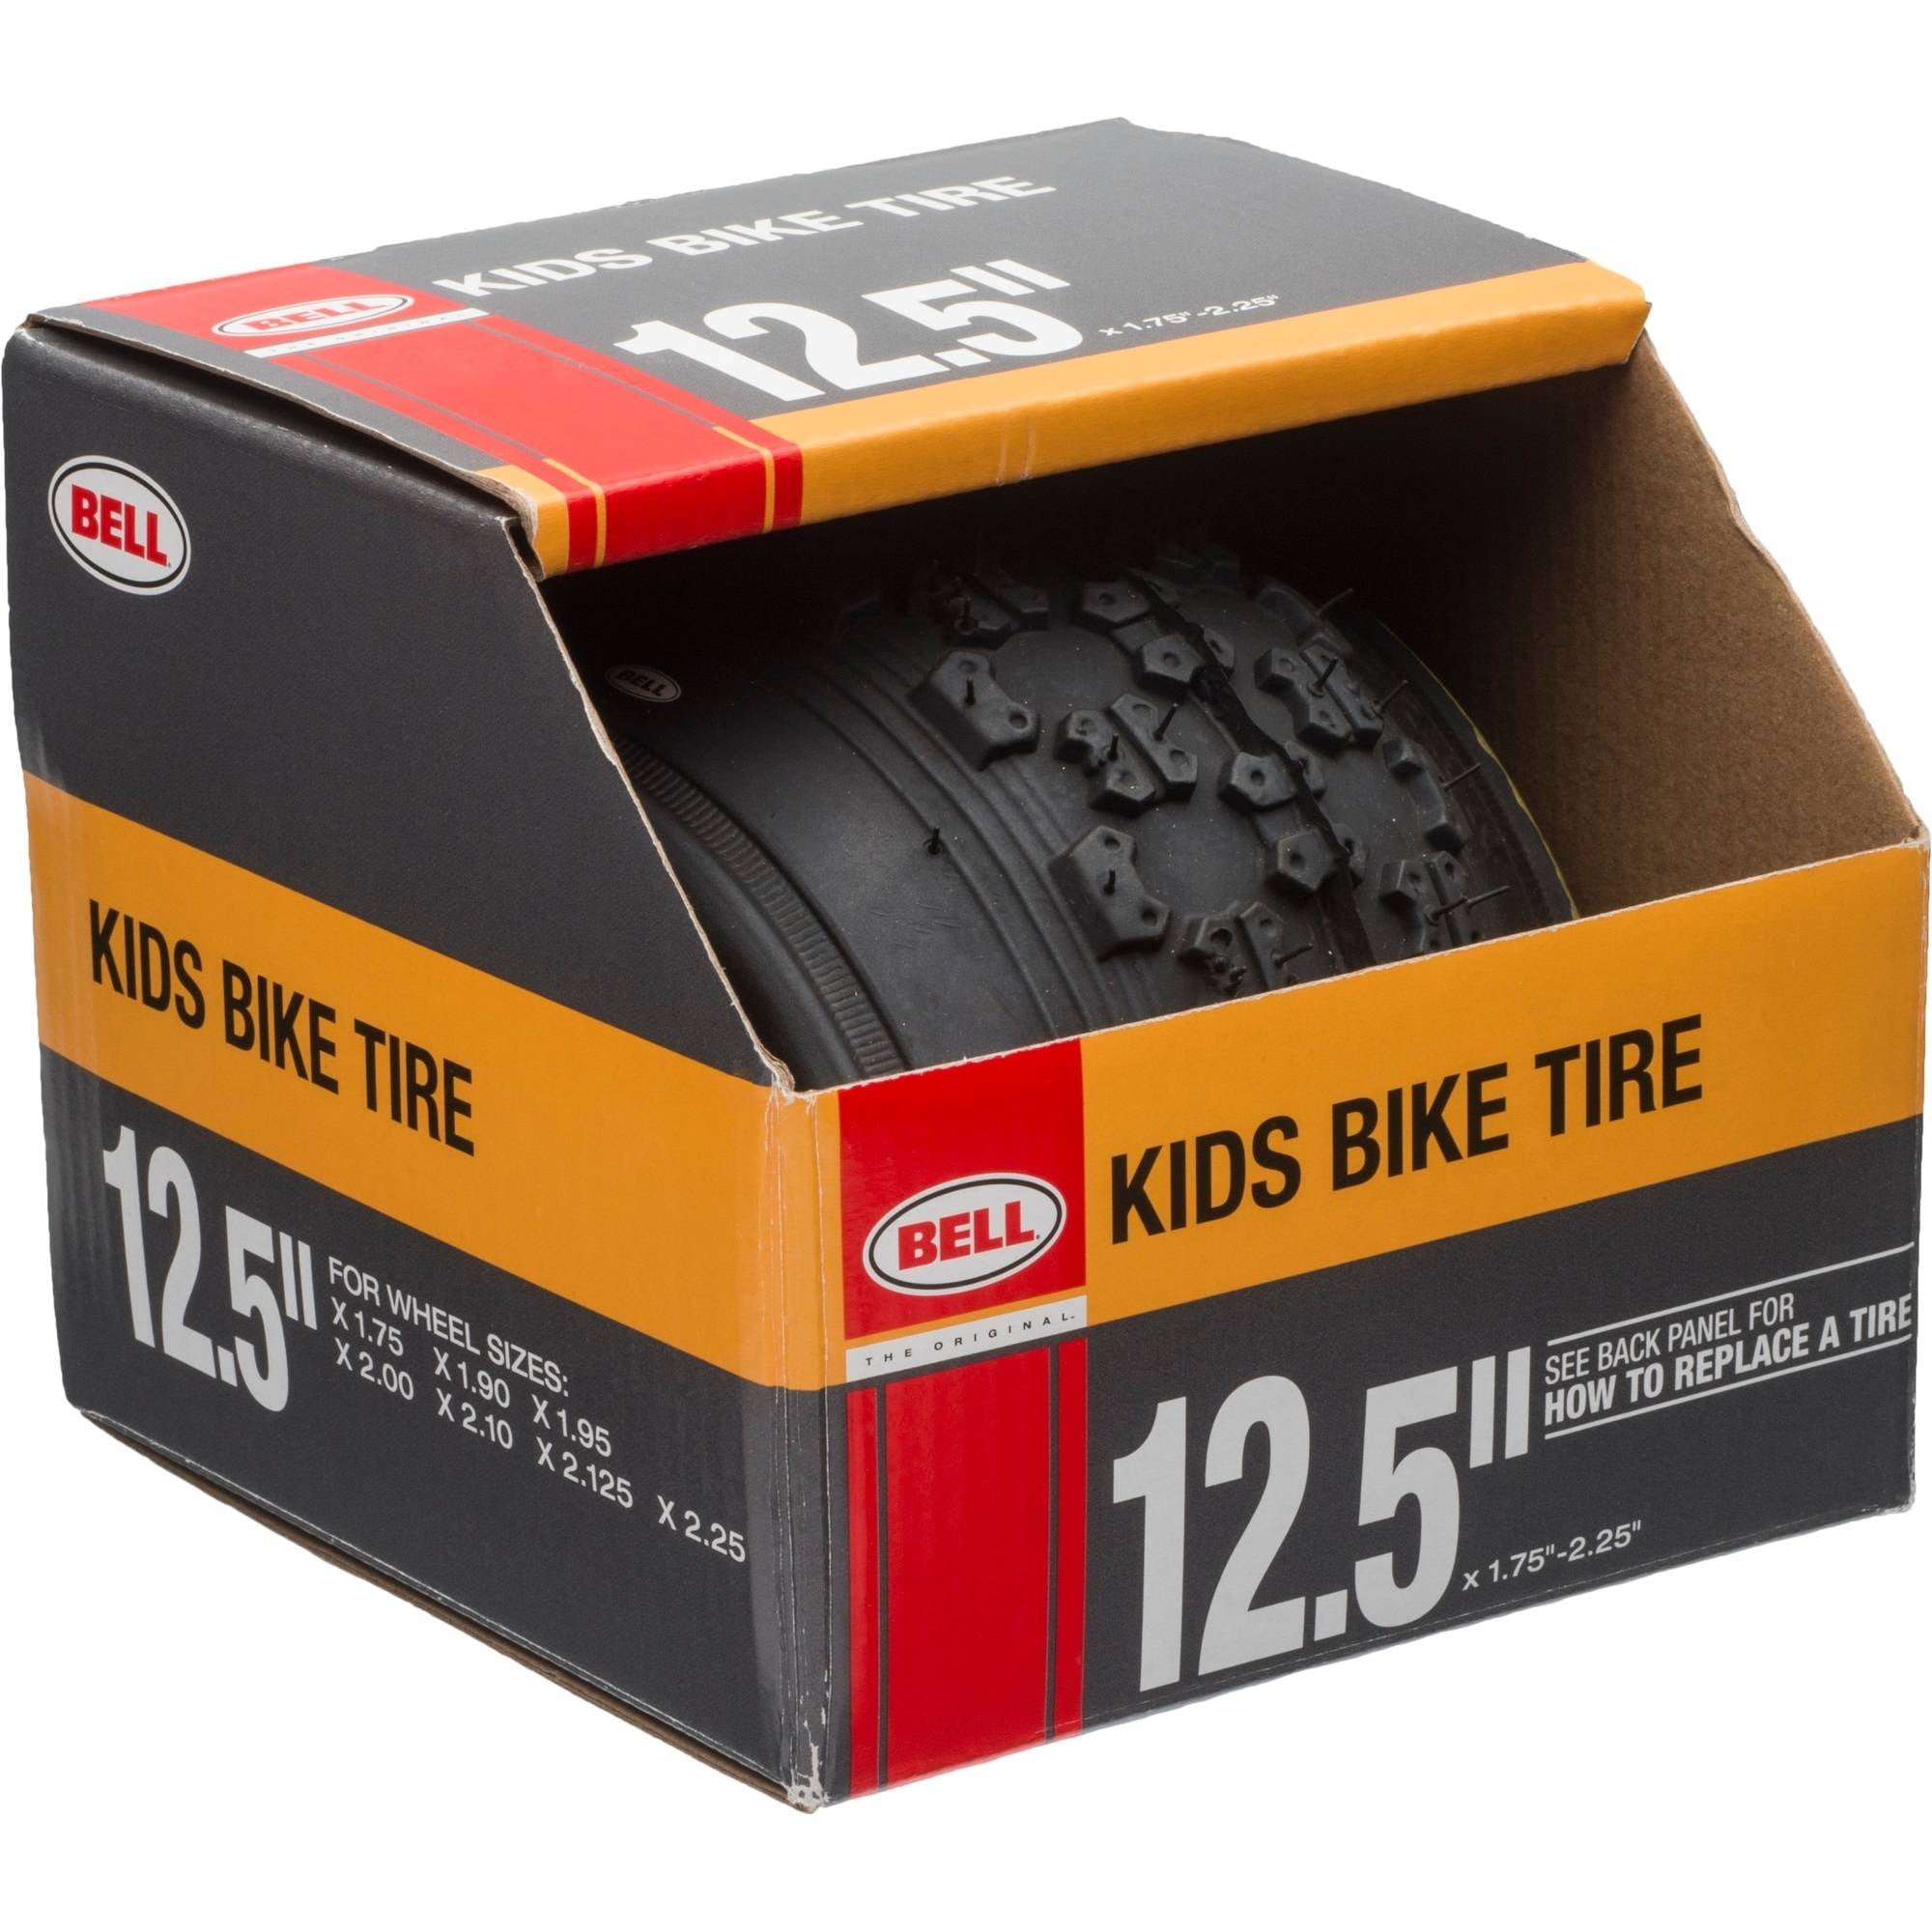 Bell Kids Bike Tire Pneumatici 16 POLLICI x 1.75-2.25 pollici Nuovo di Zecca 